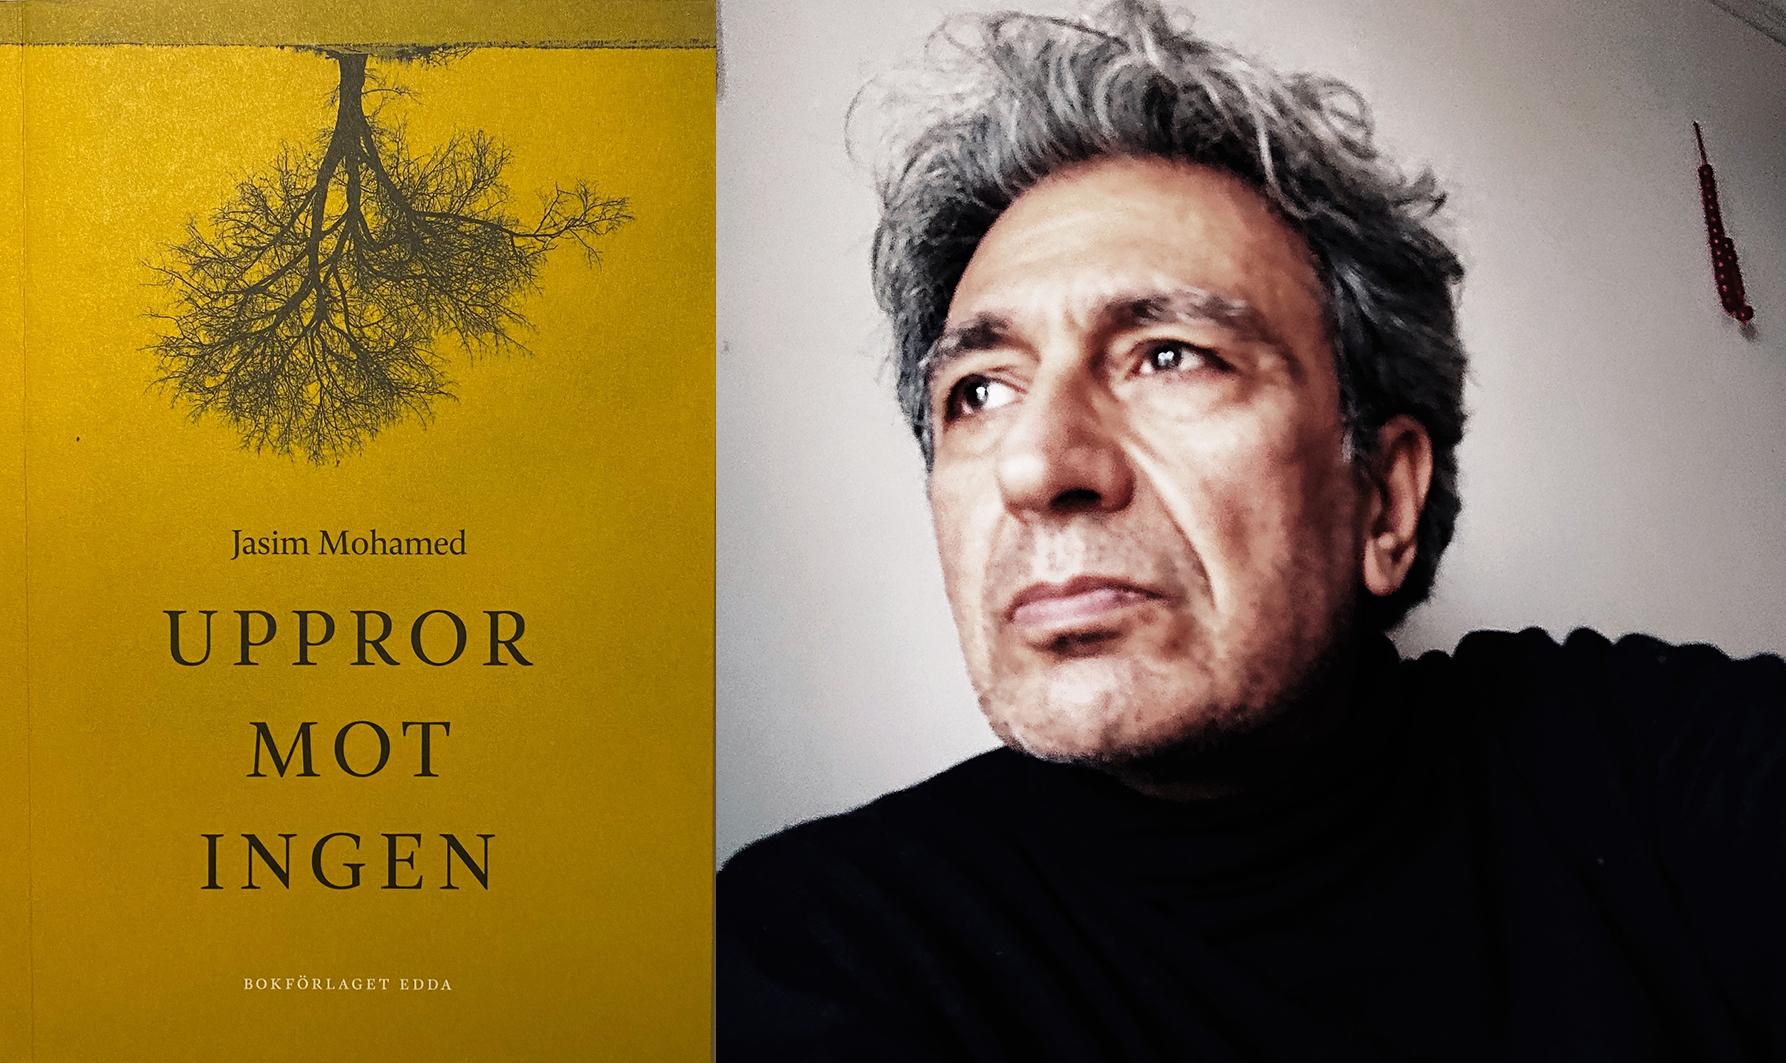 Poeten och översättaren Jasim Mohamed (född 1962) är bosatt i Uppsala och Aten och drev under många år den internationella poesiscenen Bagdad Café i Tensta. Han debuterade 2005 med ”Övningar in i ett annat språk” och utkommer nu med sin fjärde diktsamling, ”Uppror mot ingen”.